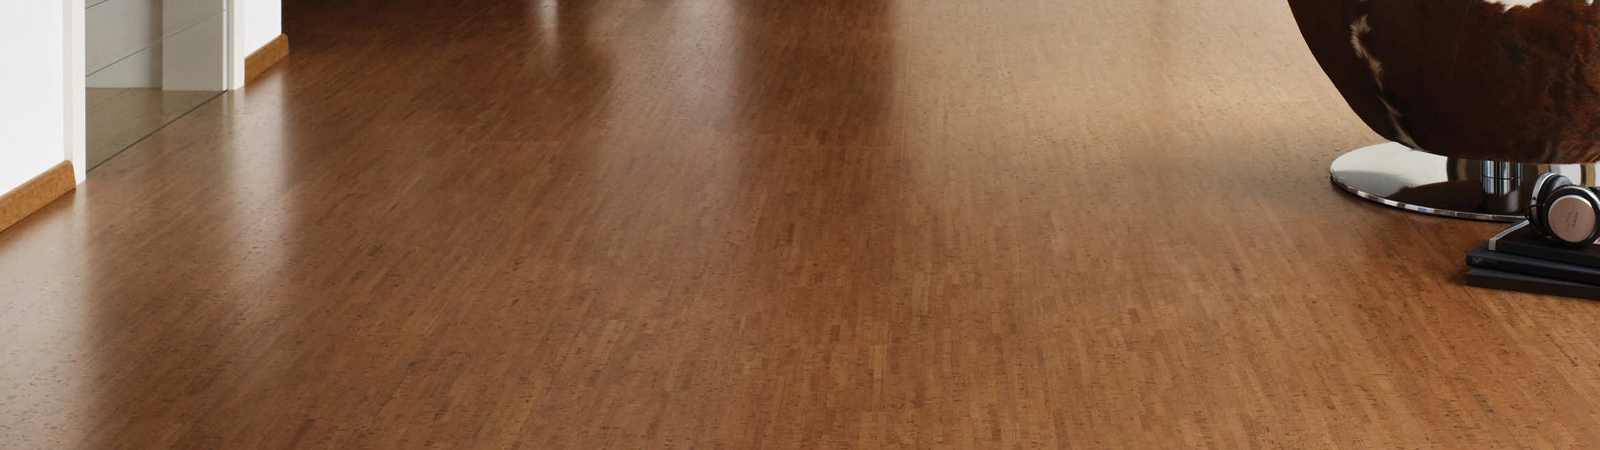 Avant Garde Cork Flooring Planks & Tiles